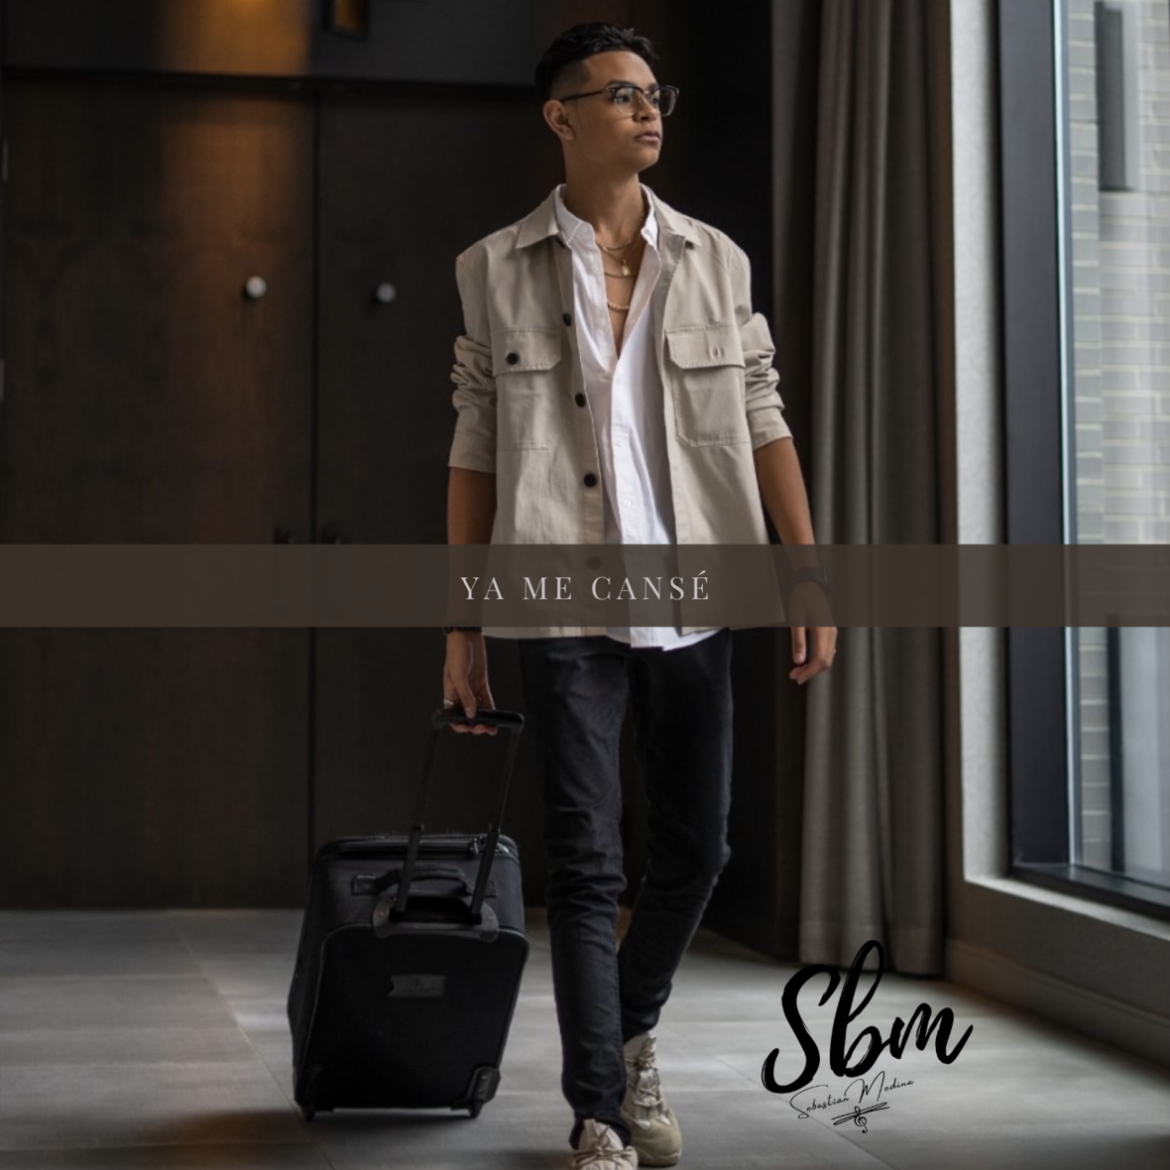 Sbm lanza nuevo tema “Ya Me Cansé”, producido por Diego Galé